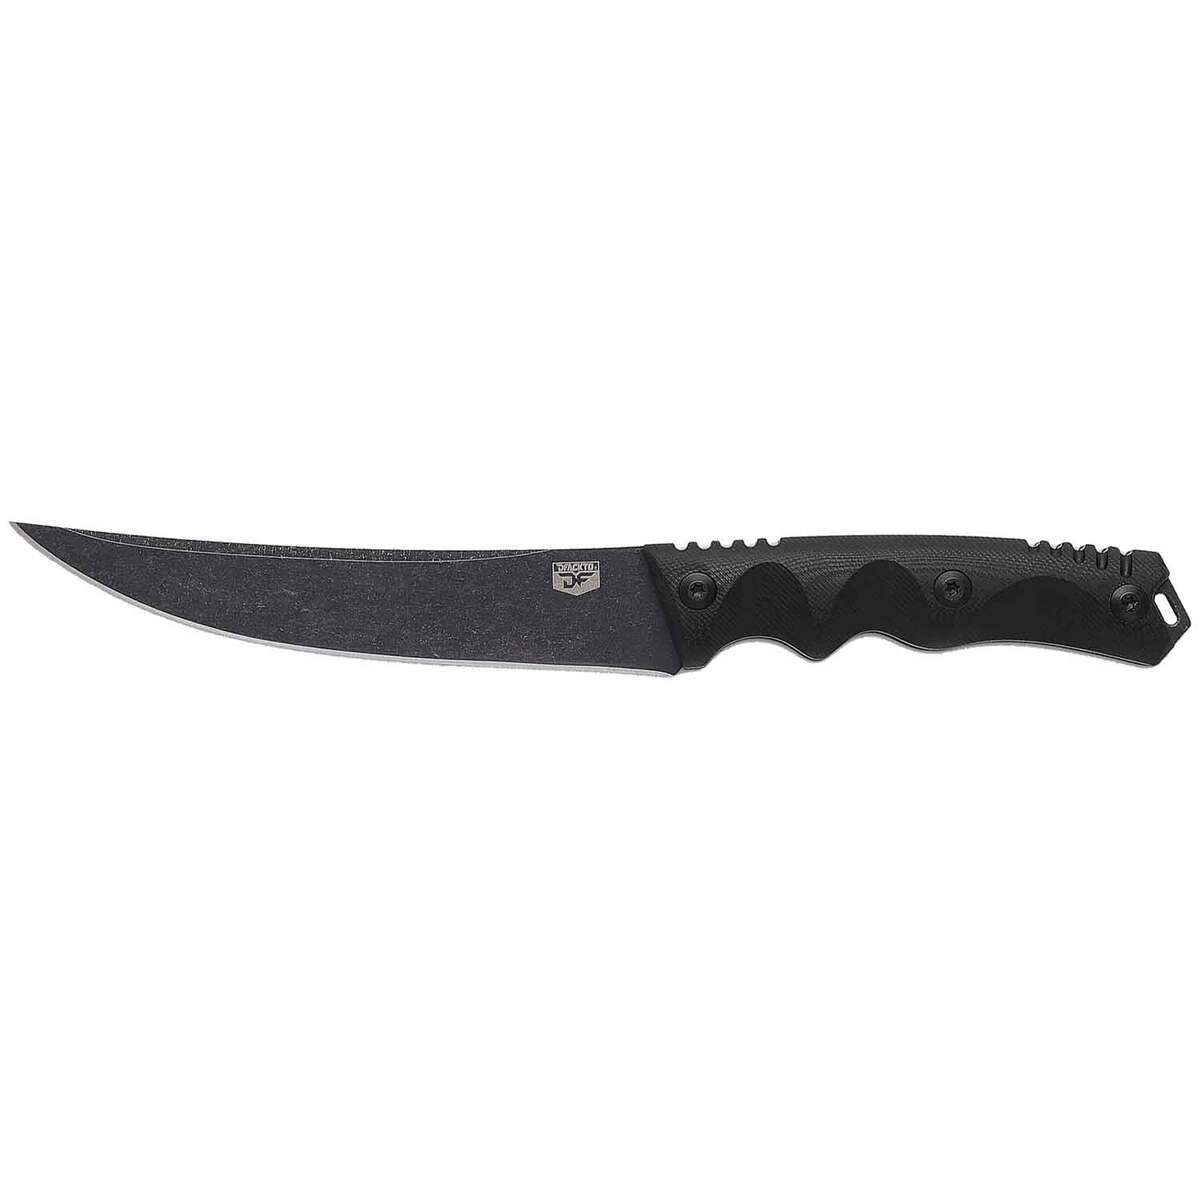 https://www.knives.com/medias/dfackto-interceptor-6-inch-fixed-blade-knife-1718266-1.jpg?context=bWFzdGVyfGltYWdlc3wzMjM5NnxpbWFnZS9qcGVnfGhjOS9oODQvMTA3OTg2NDk5MDEwODYvMTcxODI2Ni0xX2Jhc2UtY29udmVyc2lvbkZvcm1hdF8xMjAwLWNvbnZlcnNpb25Gb3JtYXR8M2E5ZGRiNjQ2ZTExYTFiZDZhYmRiNzExYzYyYTBhZGIwNDg0ZWI2YTA2MzlkN2QyYTBlNTQ5MDllYmNlNmIwYg